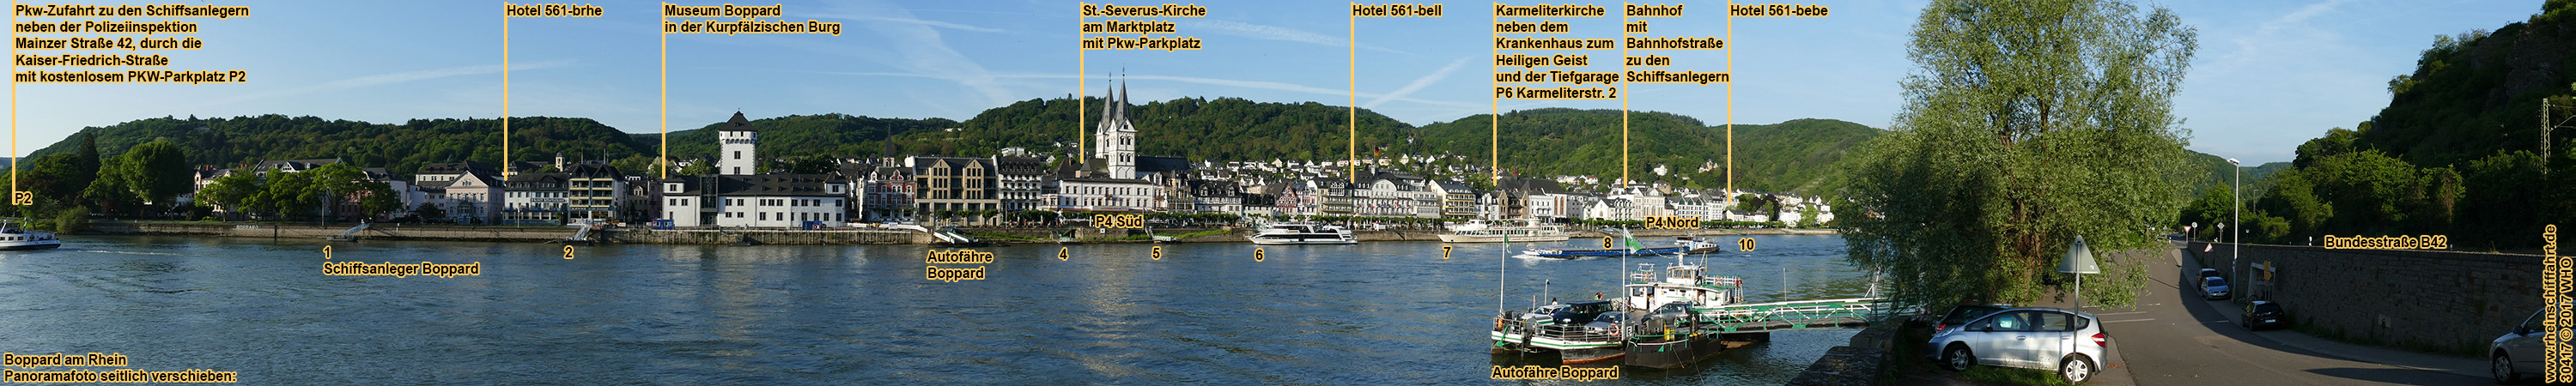 Boppard am Rhein. Panoramafoto mit Schiffsanlegern.